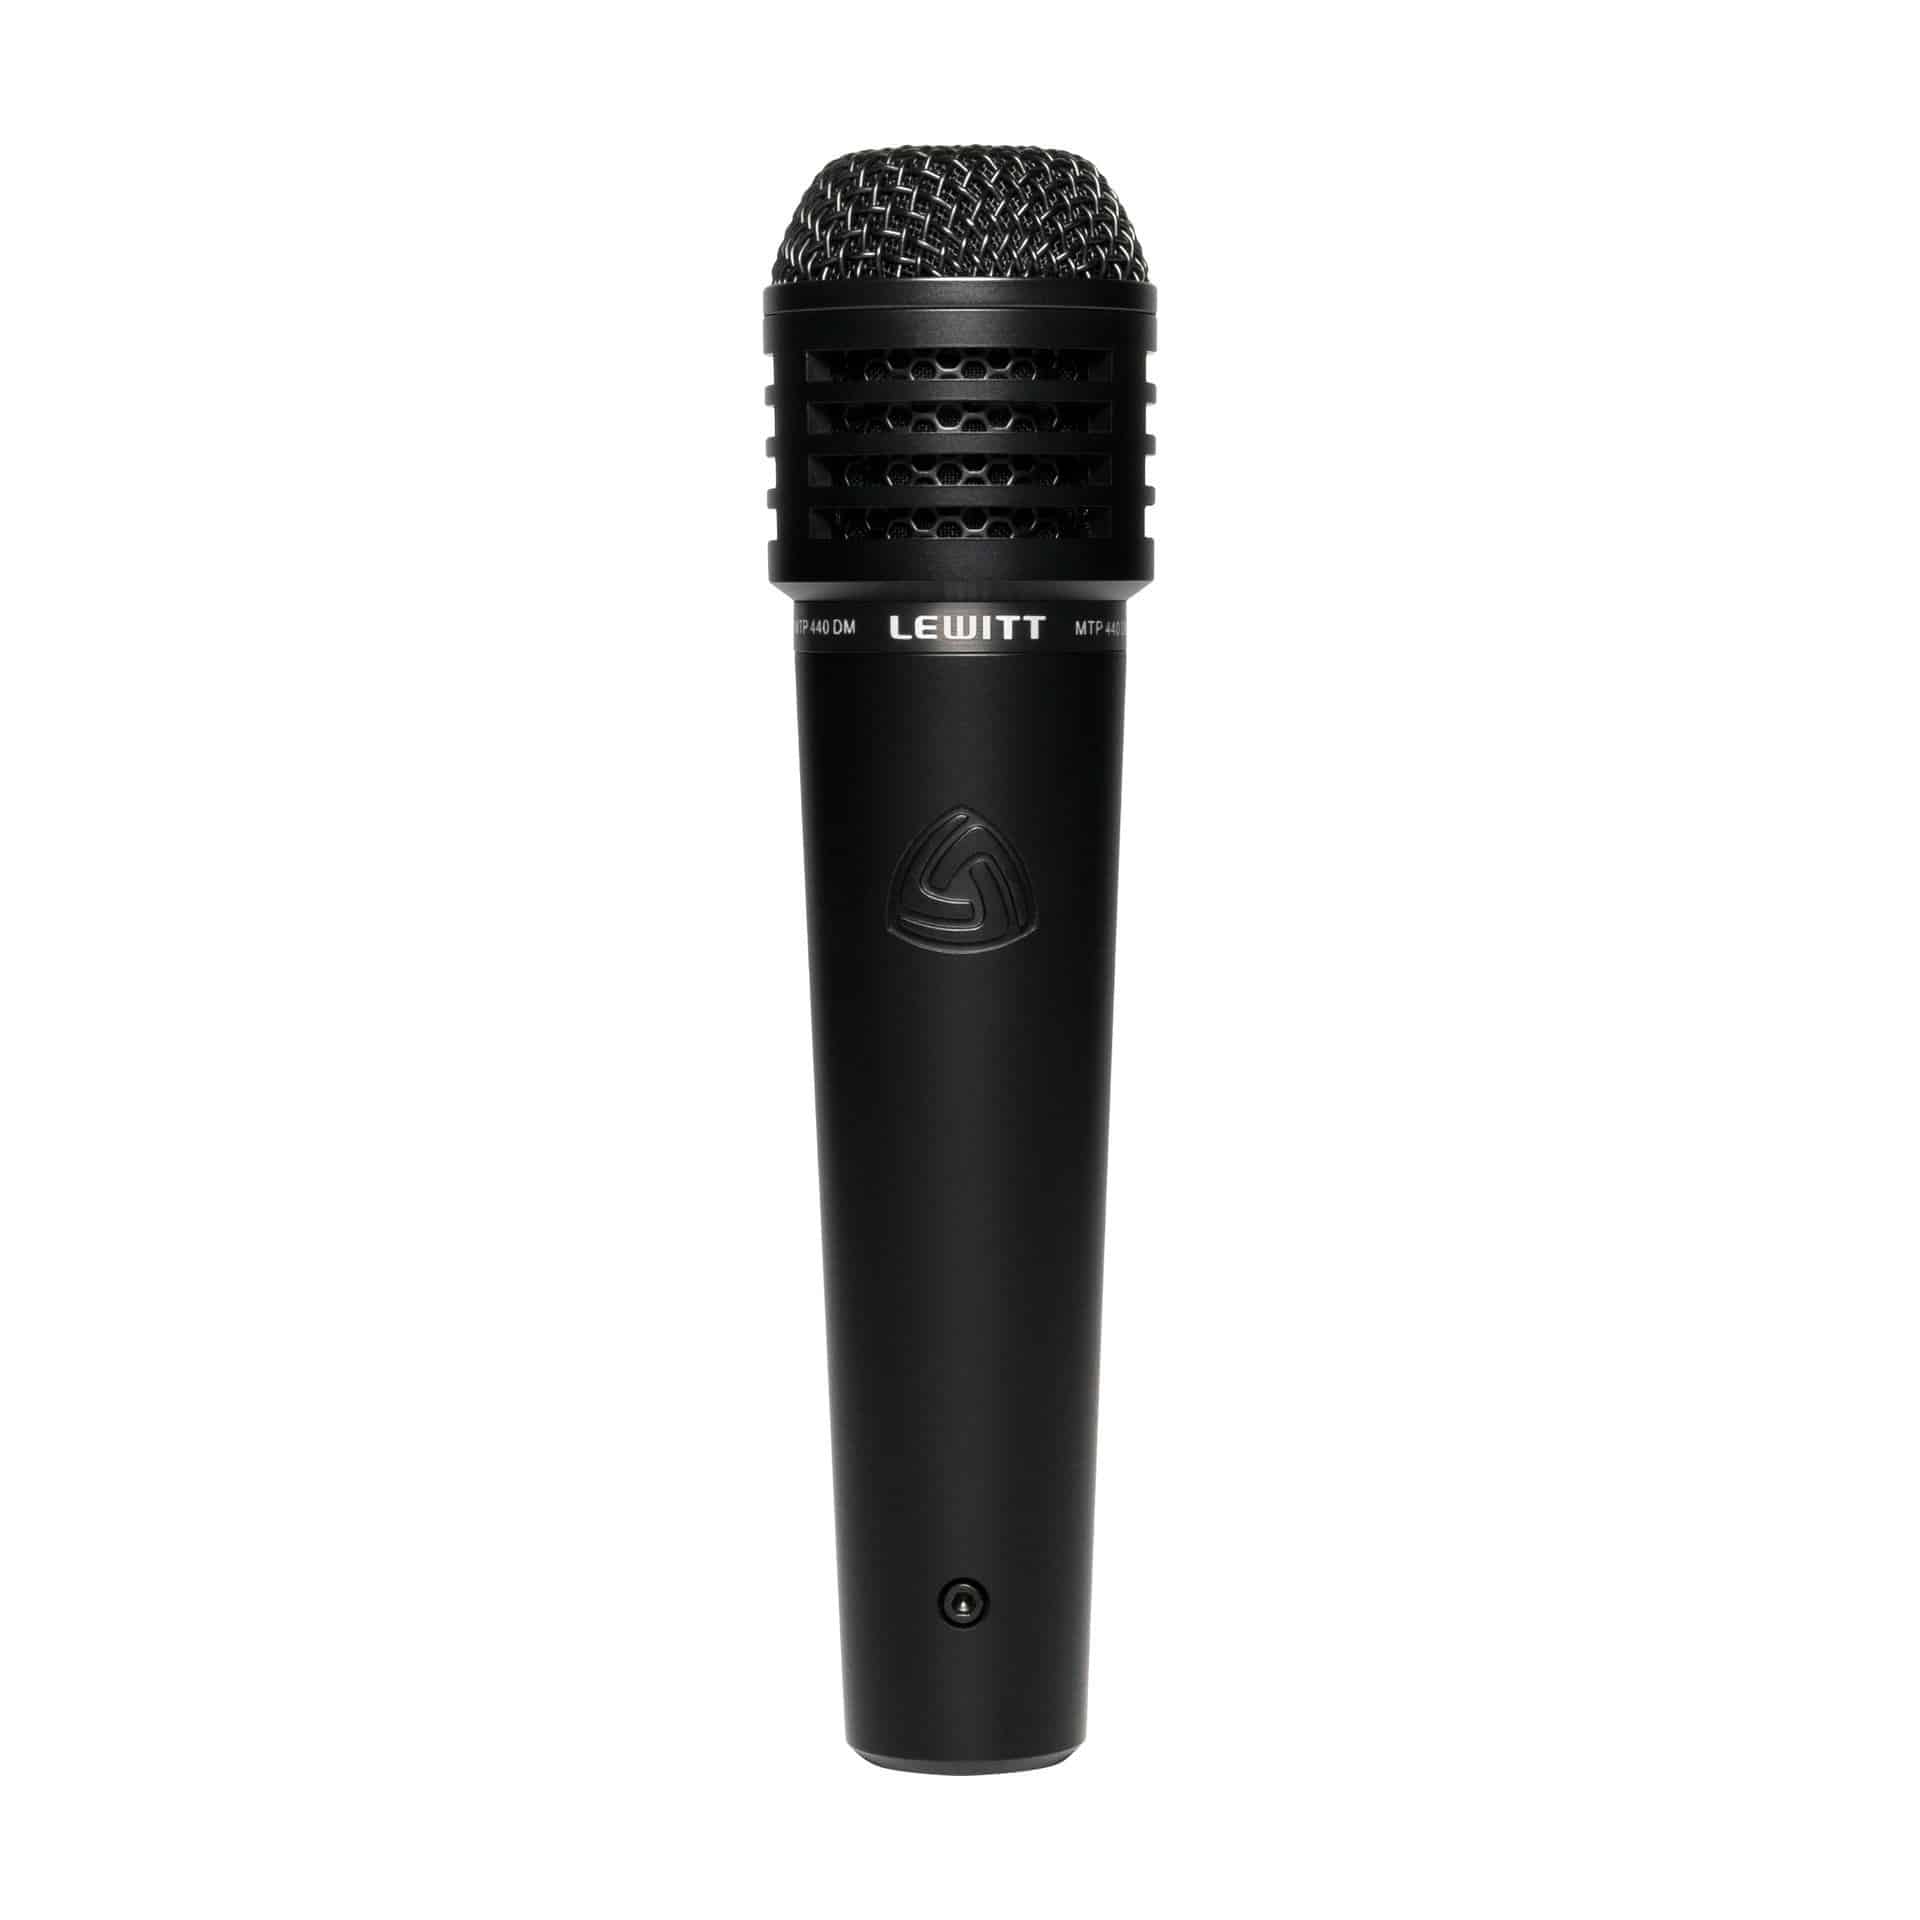 img src="/lewitt-mikrofon" alt="Lewitt MTP 440 DM Dynamisk Instrument Mikrofon "